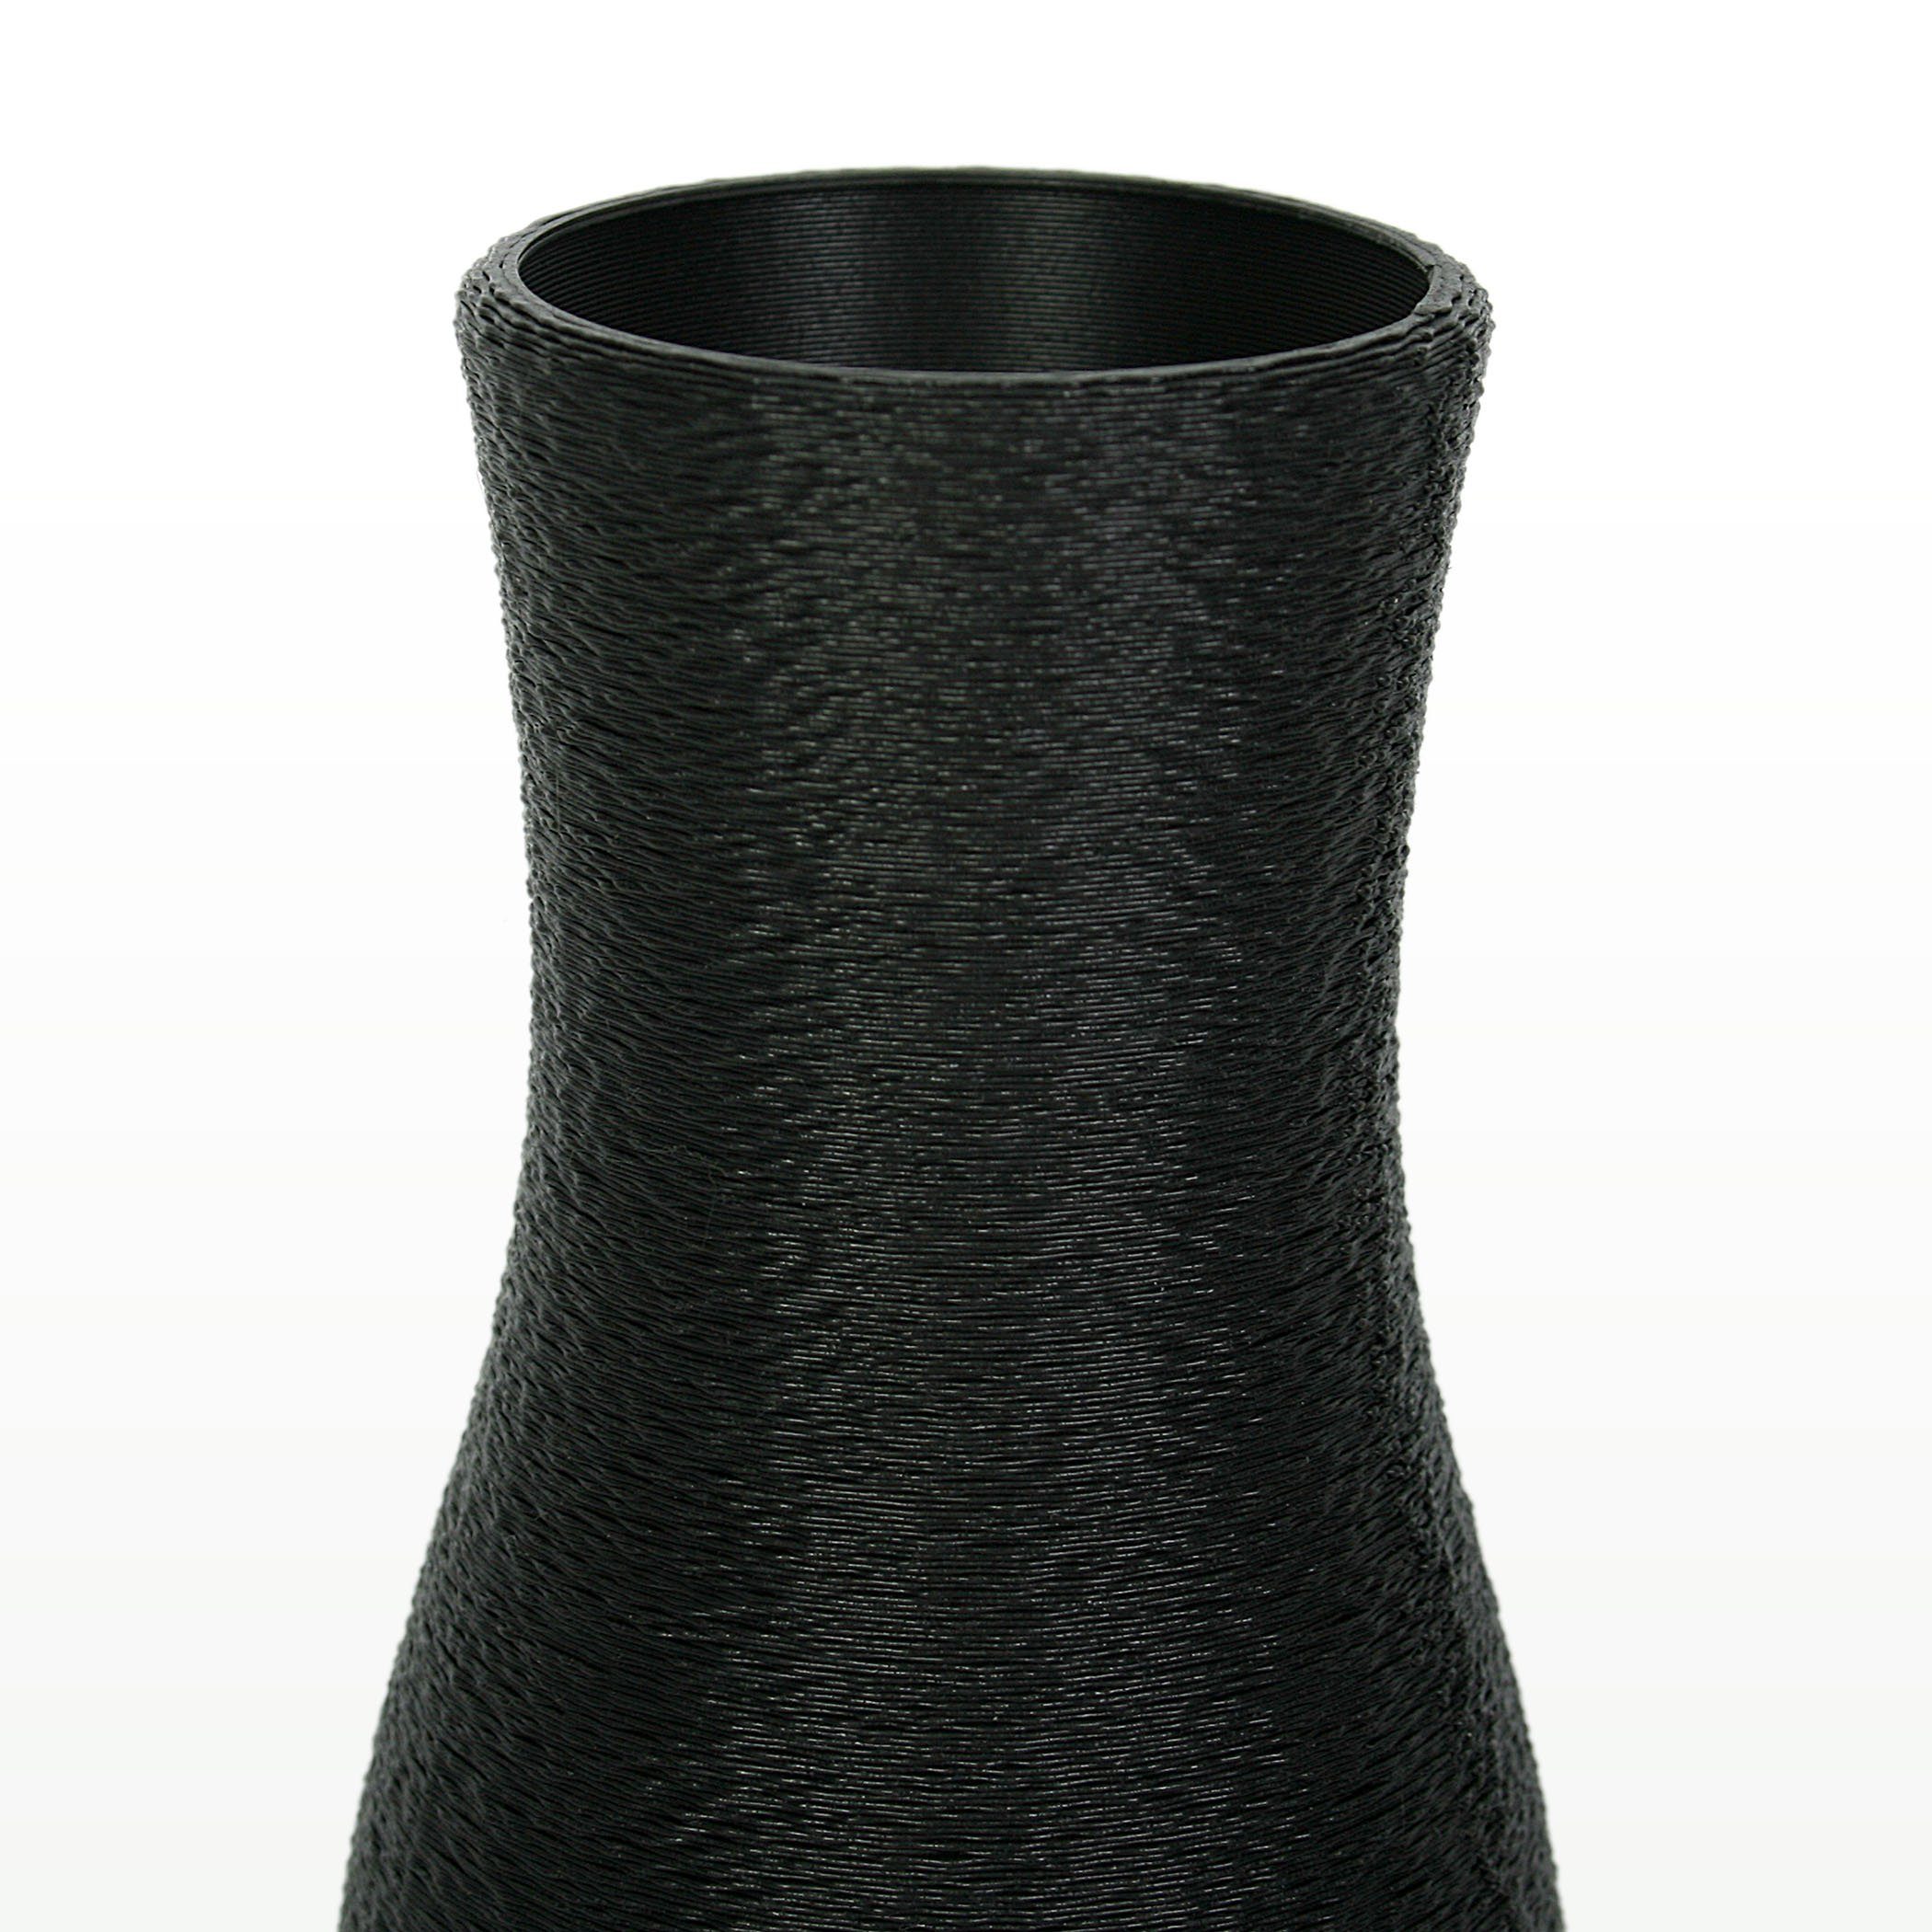 Dekorative Bio-Kunststoff, aus Dekovase – Rohstoffen; aus Designer Feder Black nachwachsenden Kreative Vase bruchsicher Blumenvase wasserdicht &